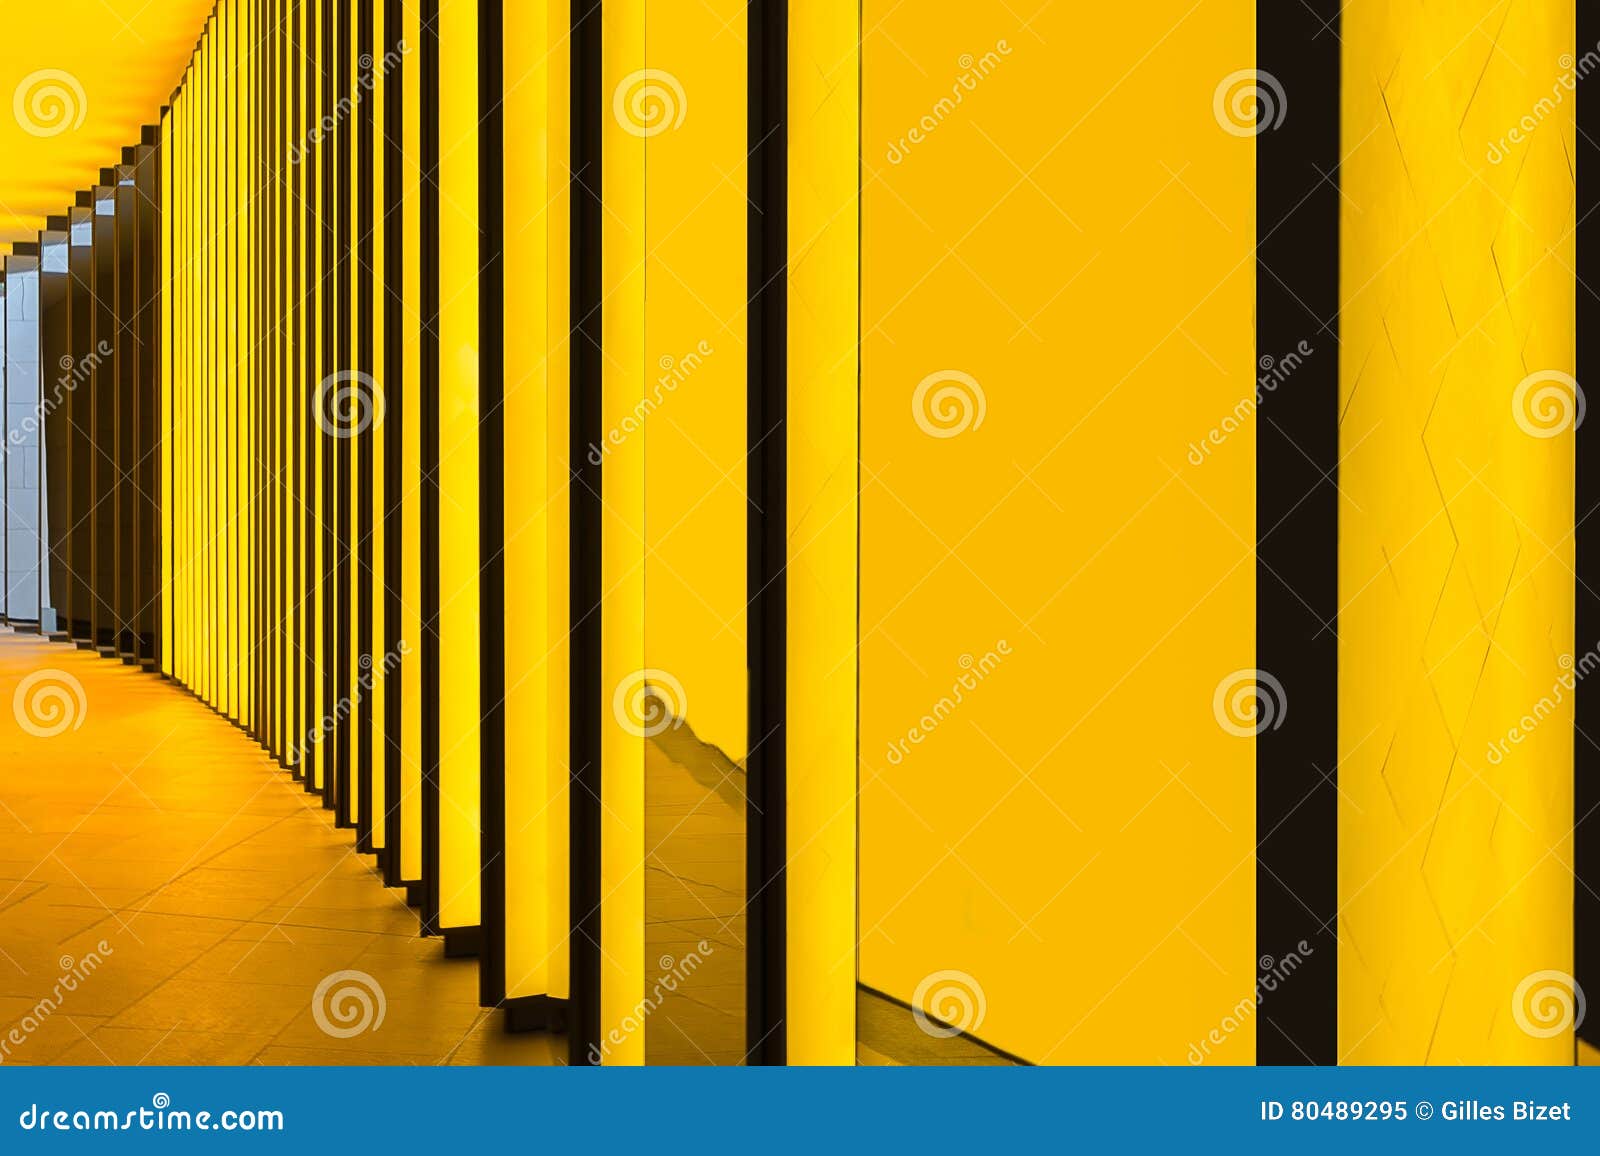 Gelbe Wand Bei Louis Vuitton Foundation, Paris, Frankreich Redaktionelles  Bild - Bild von beschaffenheit, architektonisch: 80489295